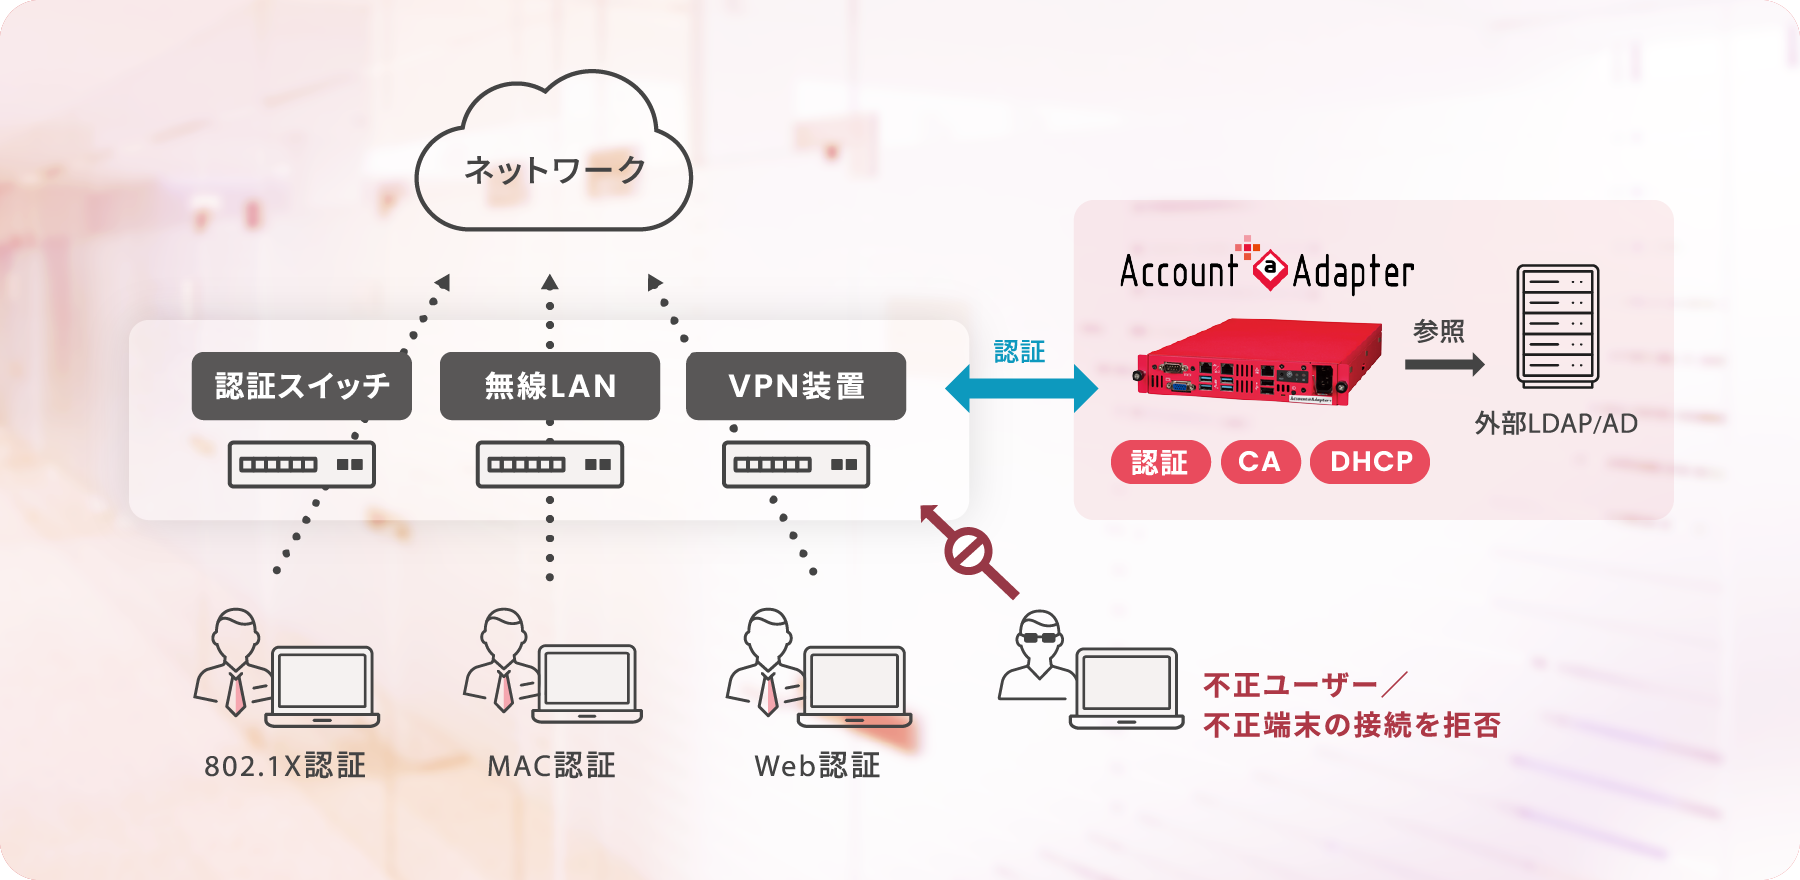 認証スイッチ、無線LAN、VPN装置の認証をAccount@Adapter+1台で実施